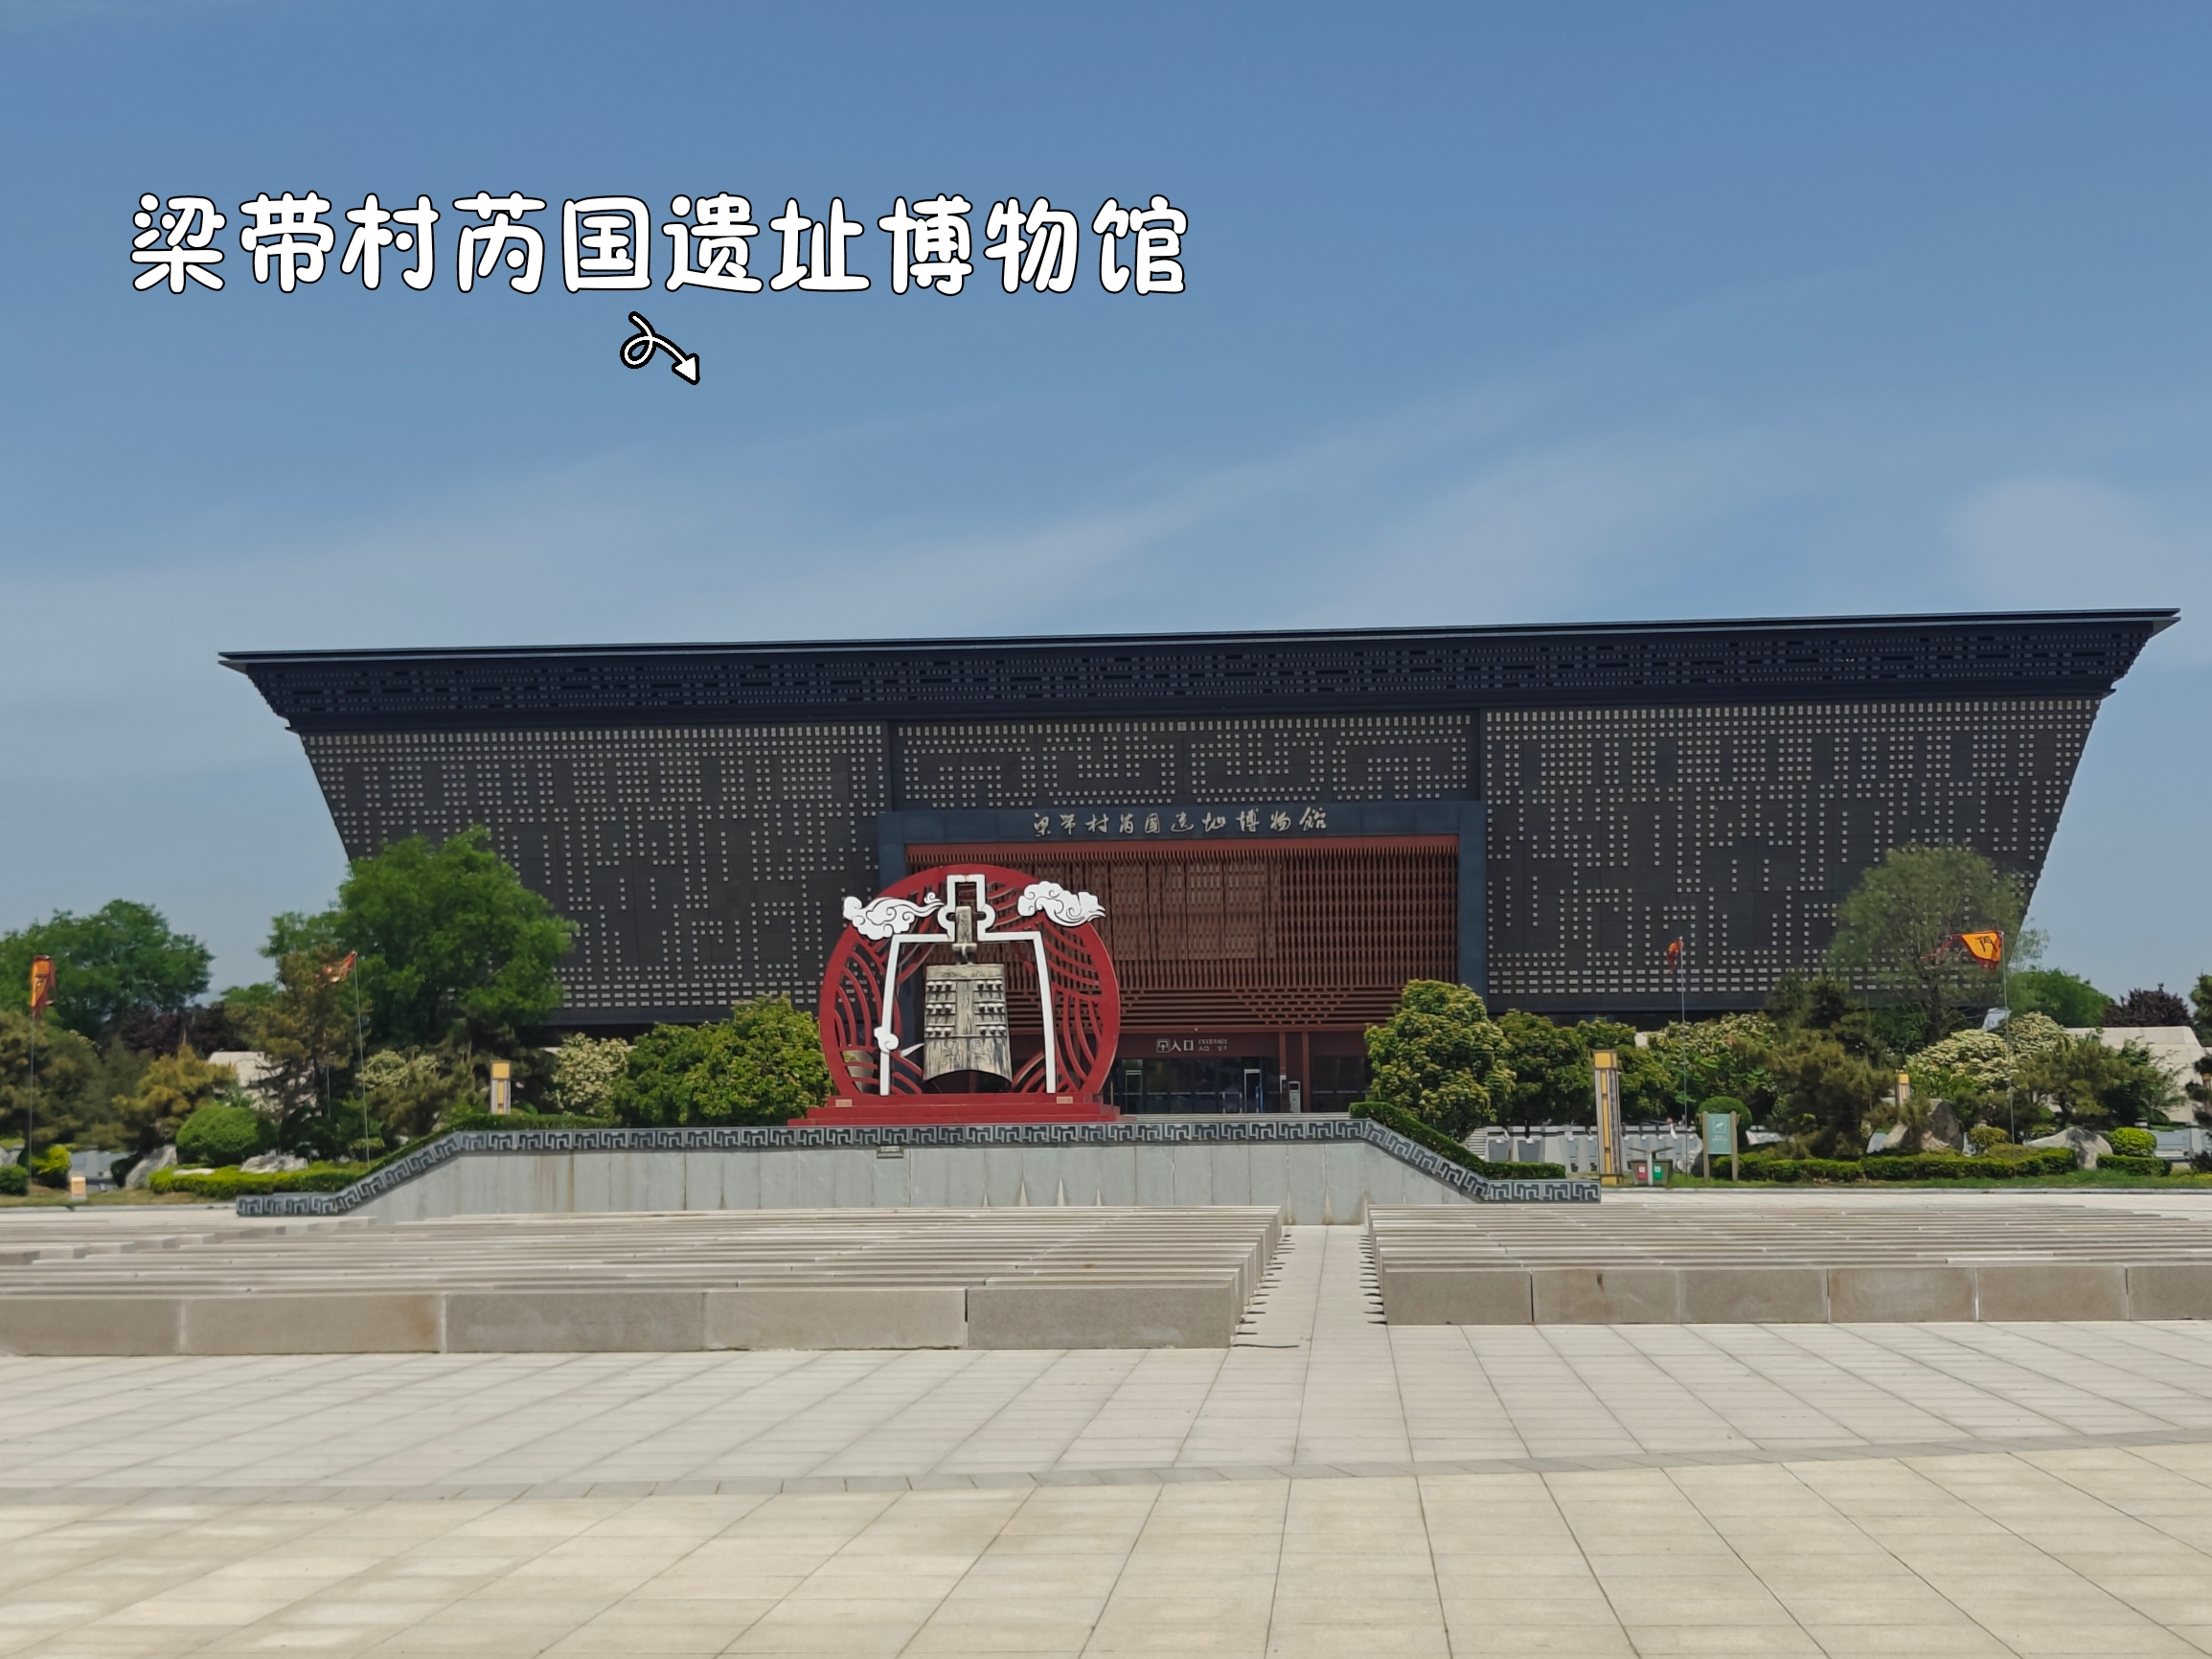 韩城市 探索两周文化 梁带村芮国遗址博物馆